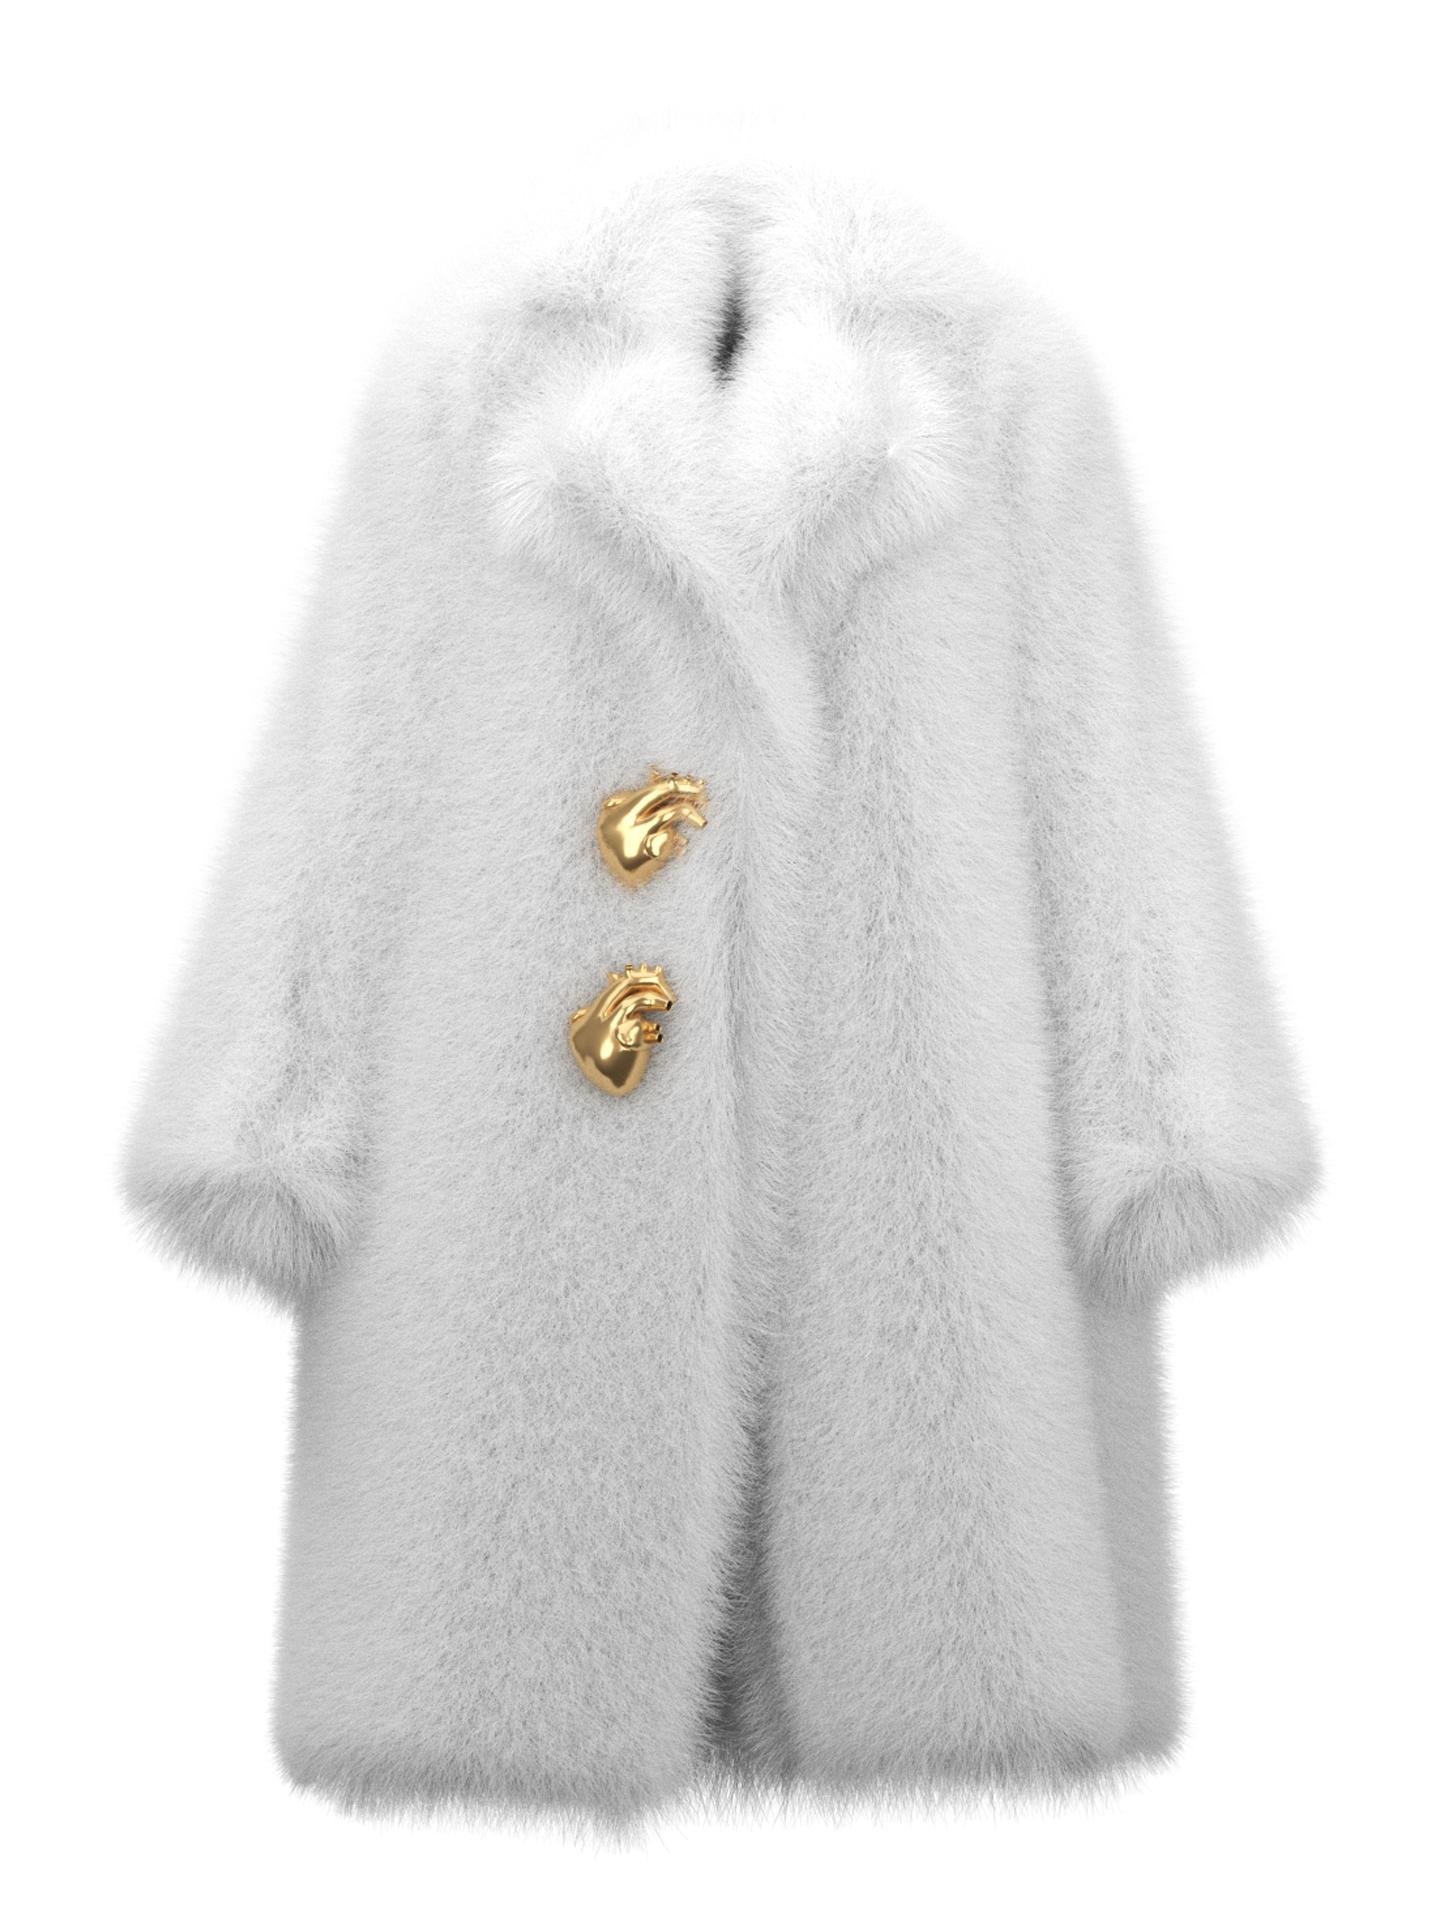 Fur-tale White Coat by LOFEDO